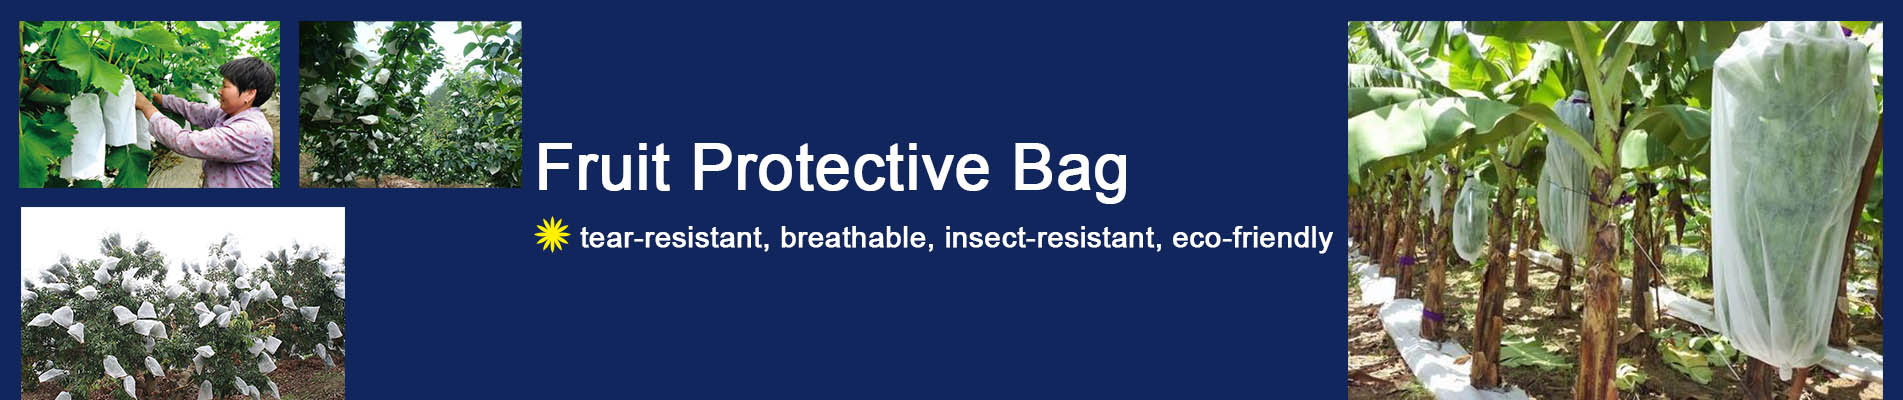 Fruit Protective Bag